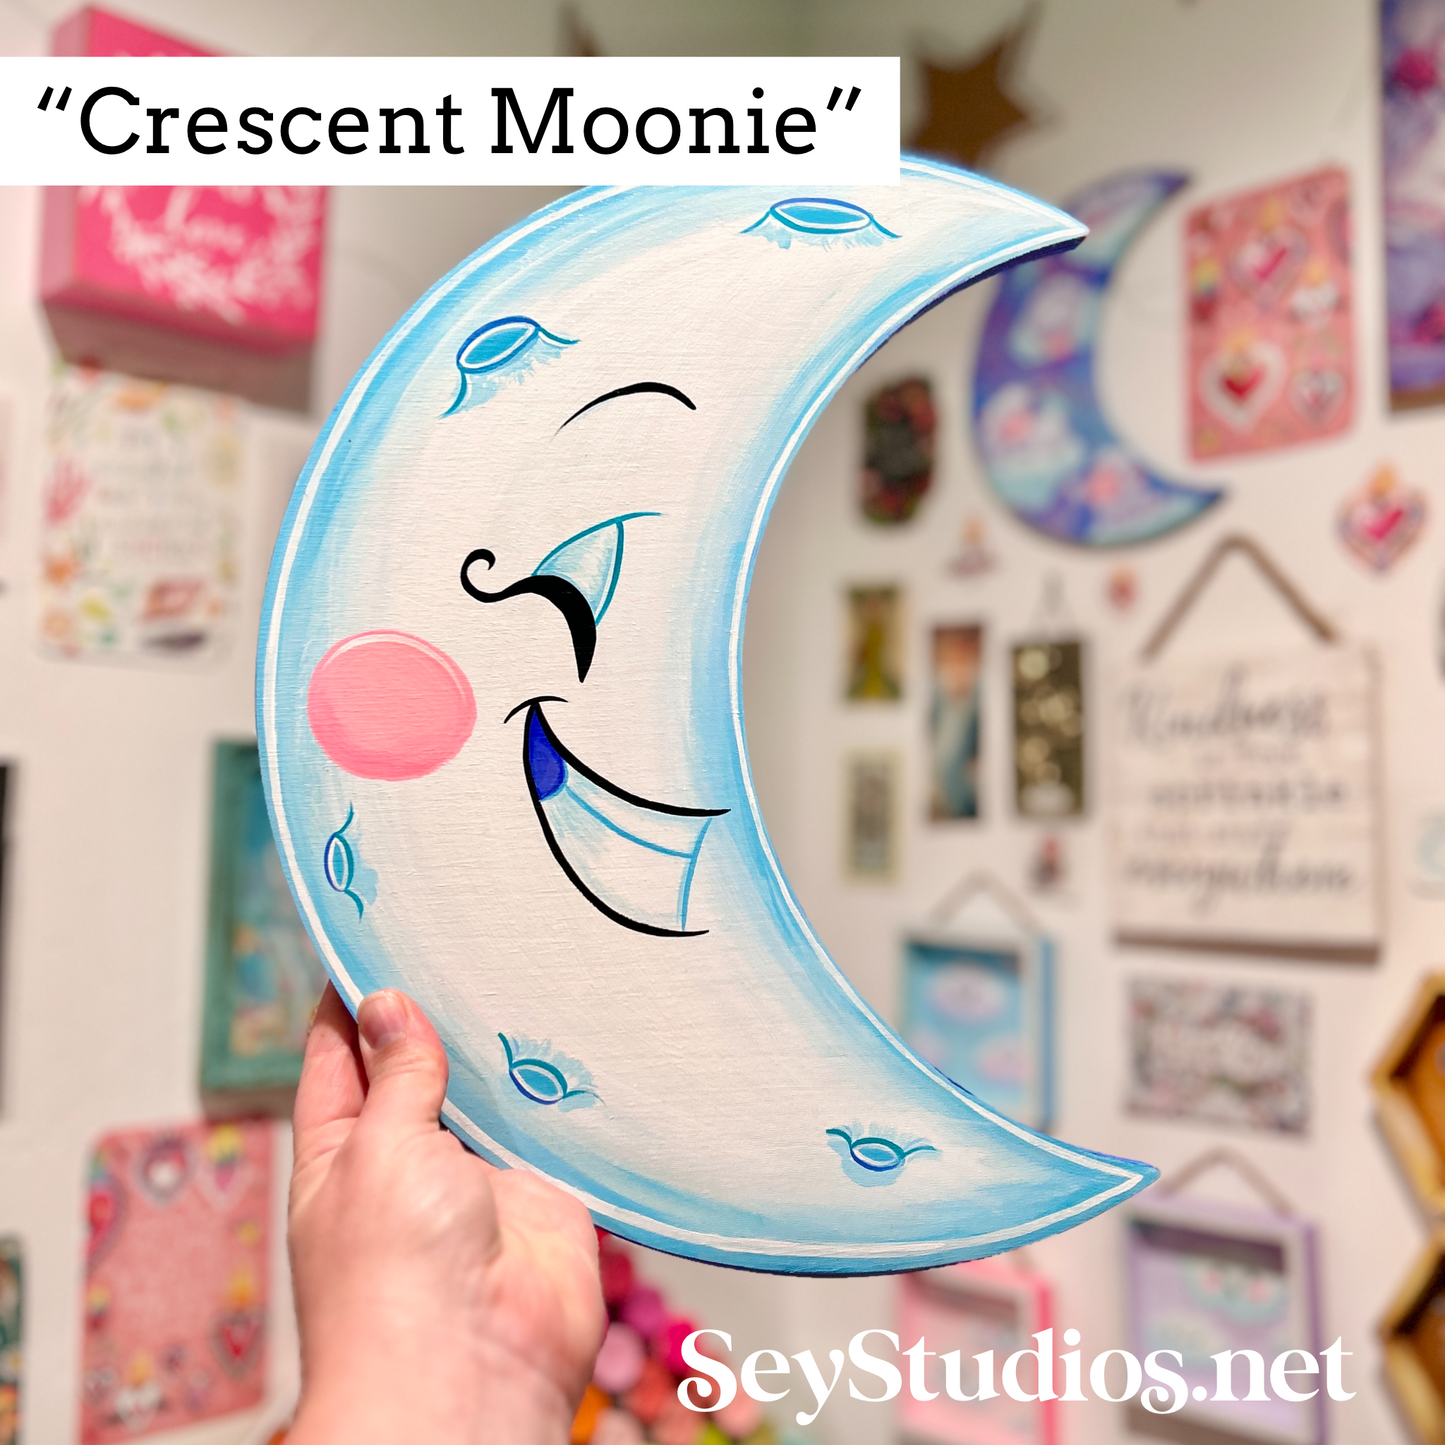 Original - “Crescent Moonie”